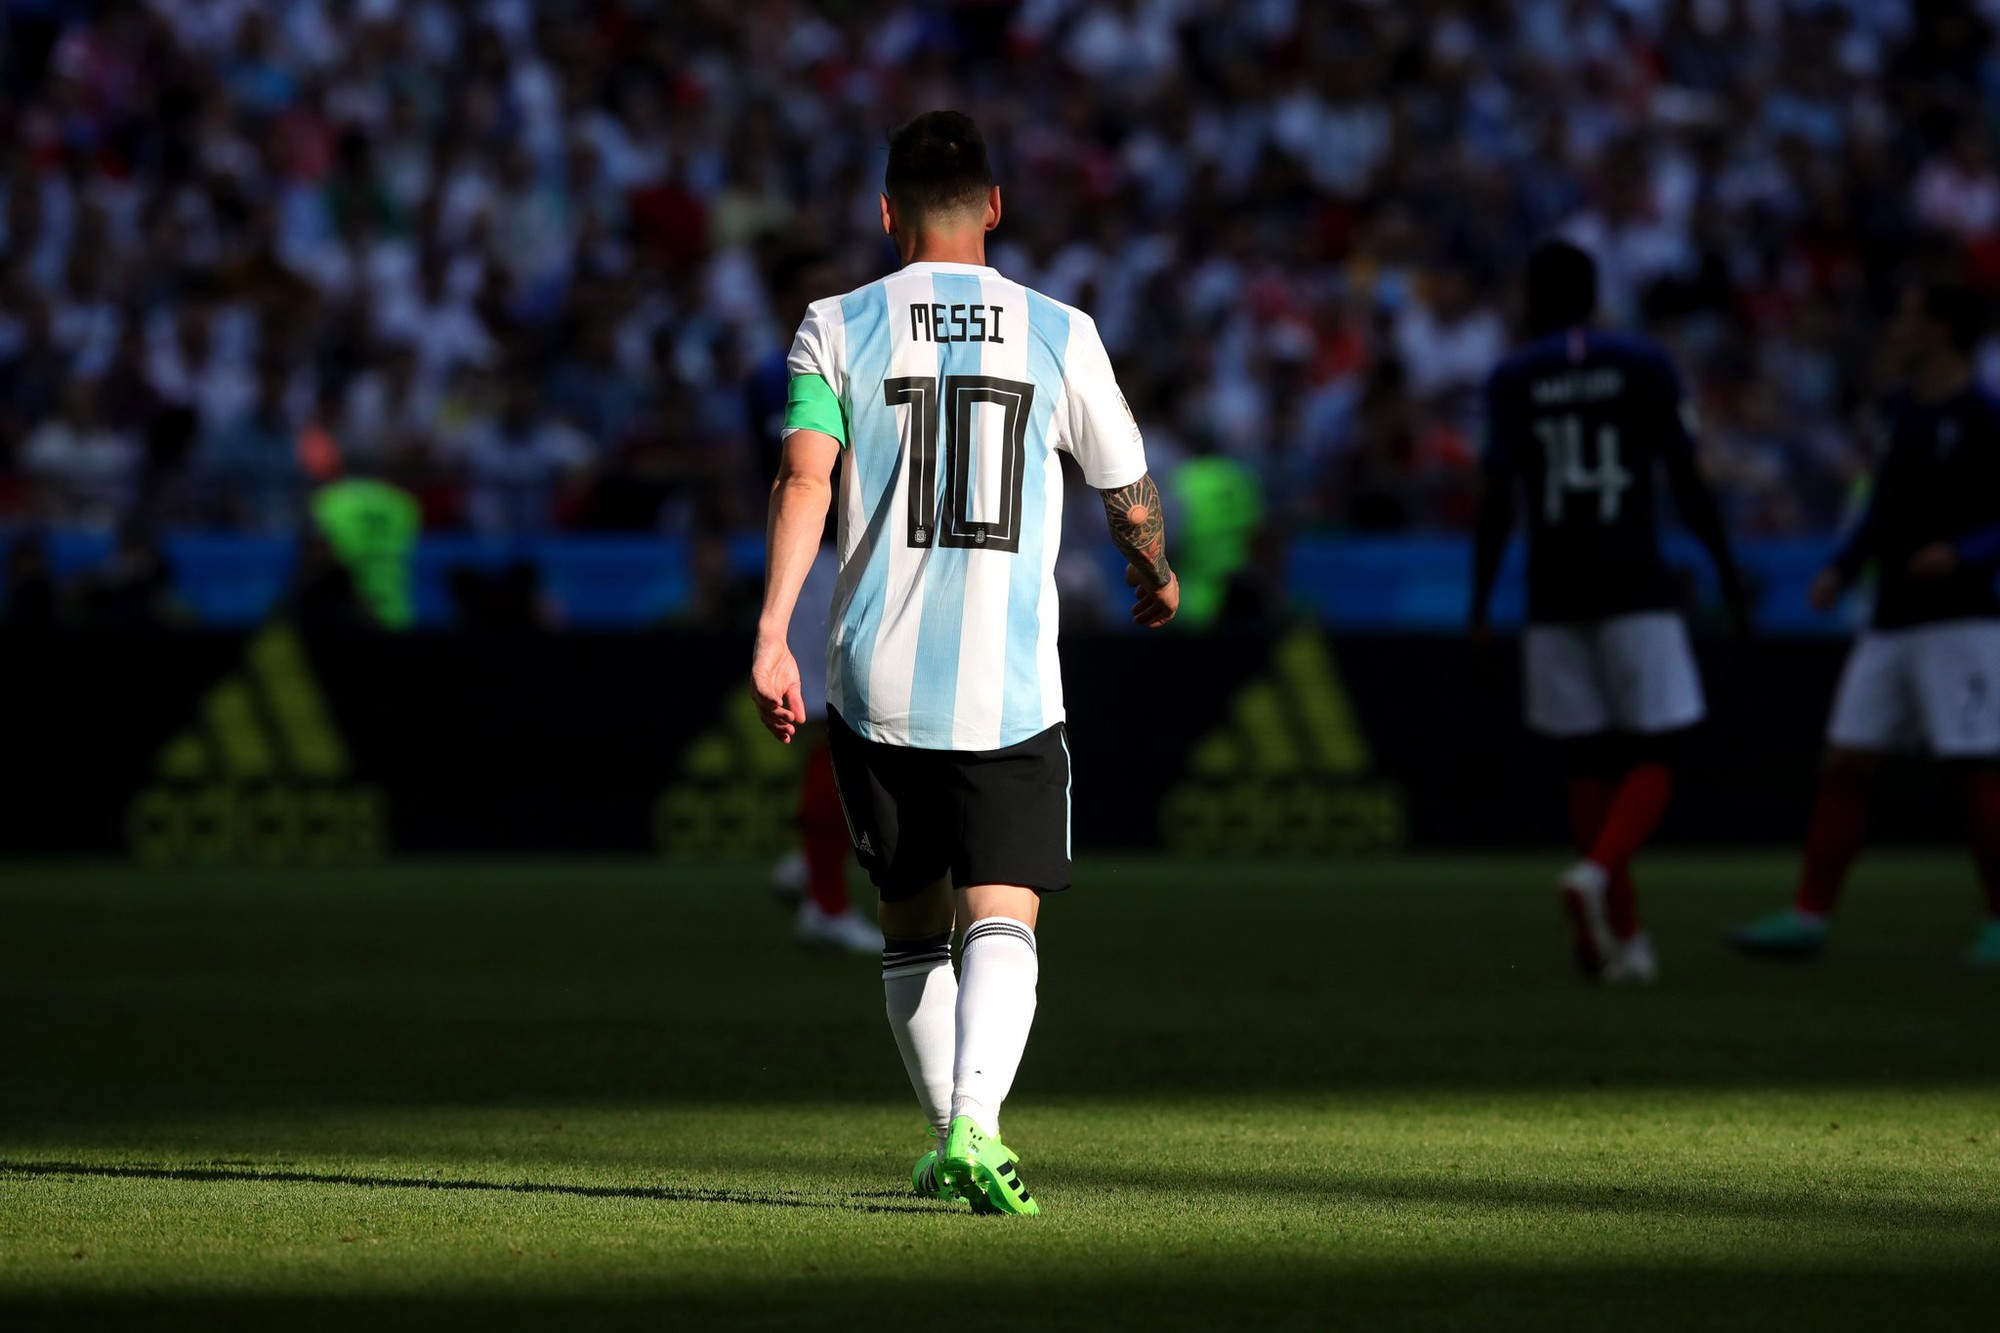 Sao trẻ Mbappe tái hiện kỳ tích của Pele nhấn chìm Argentina và Messi - Ảnh 7.